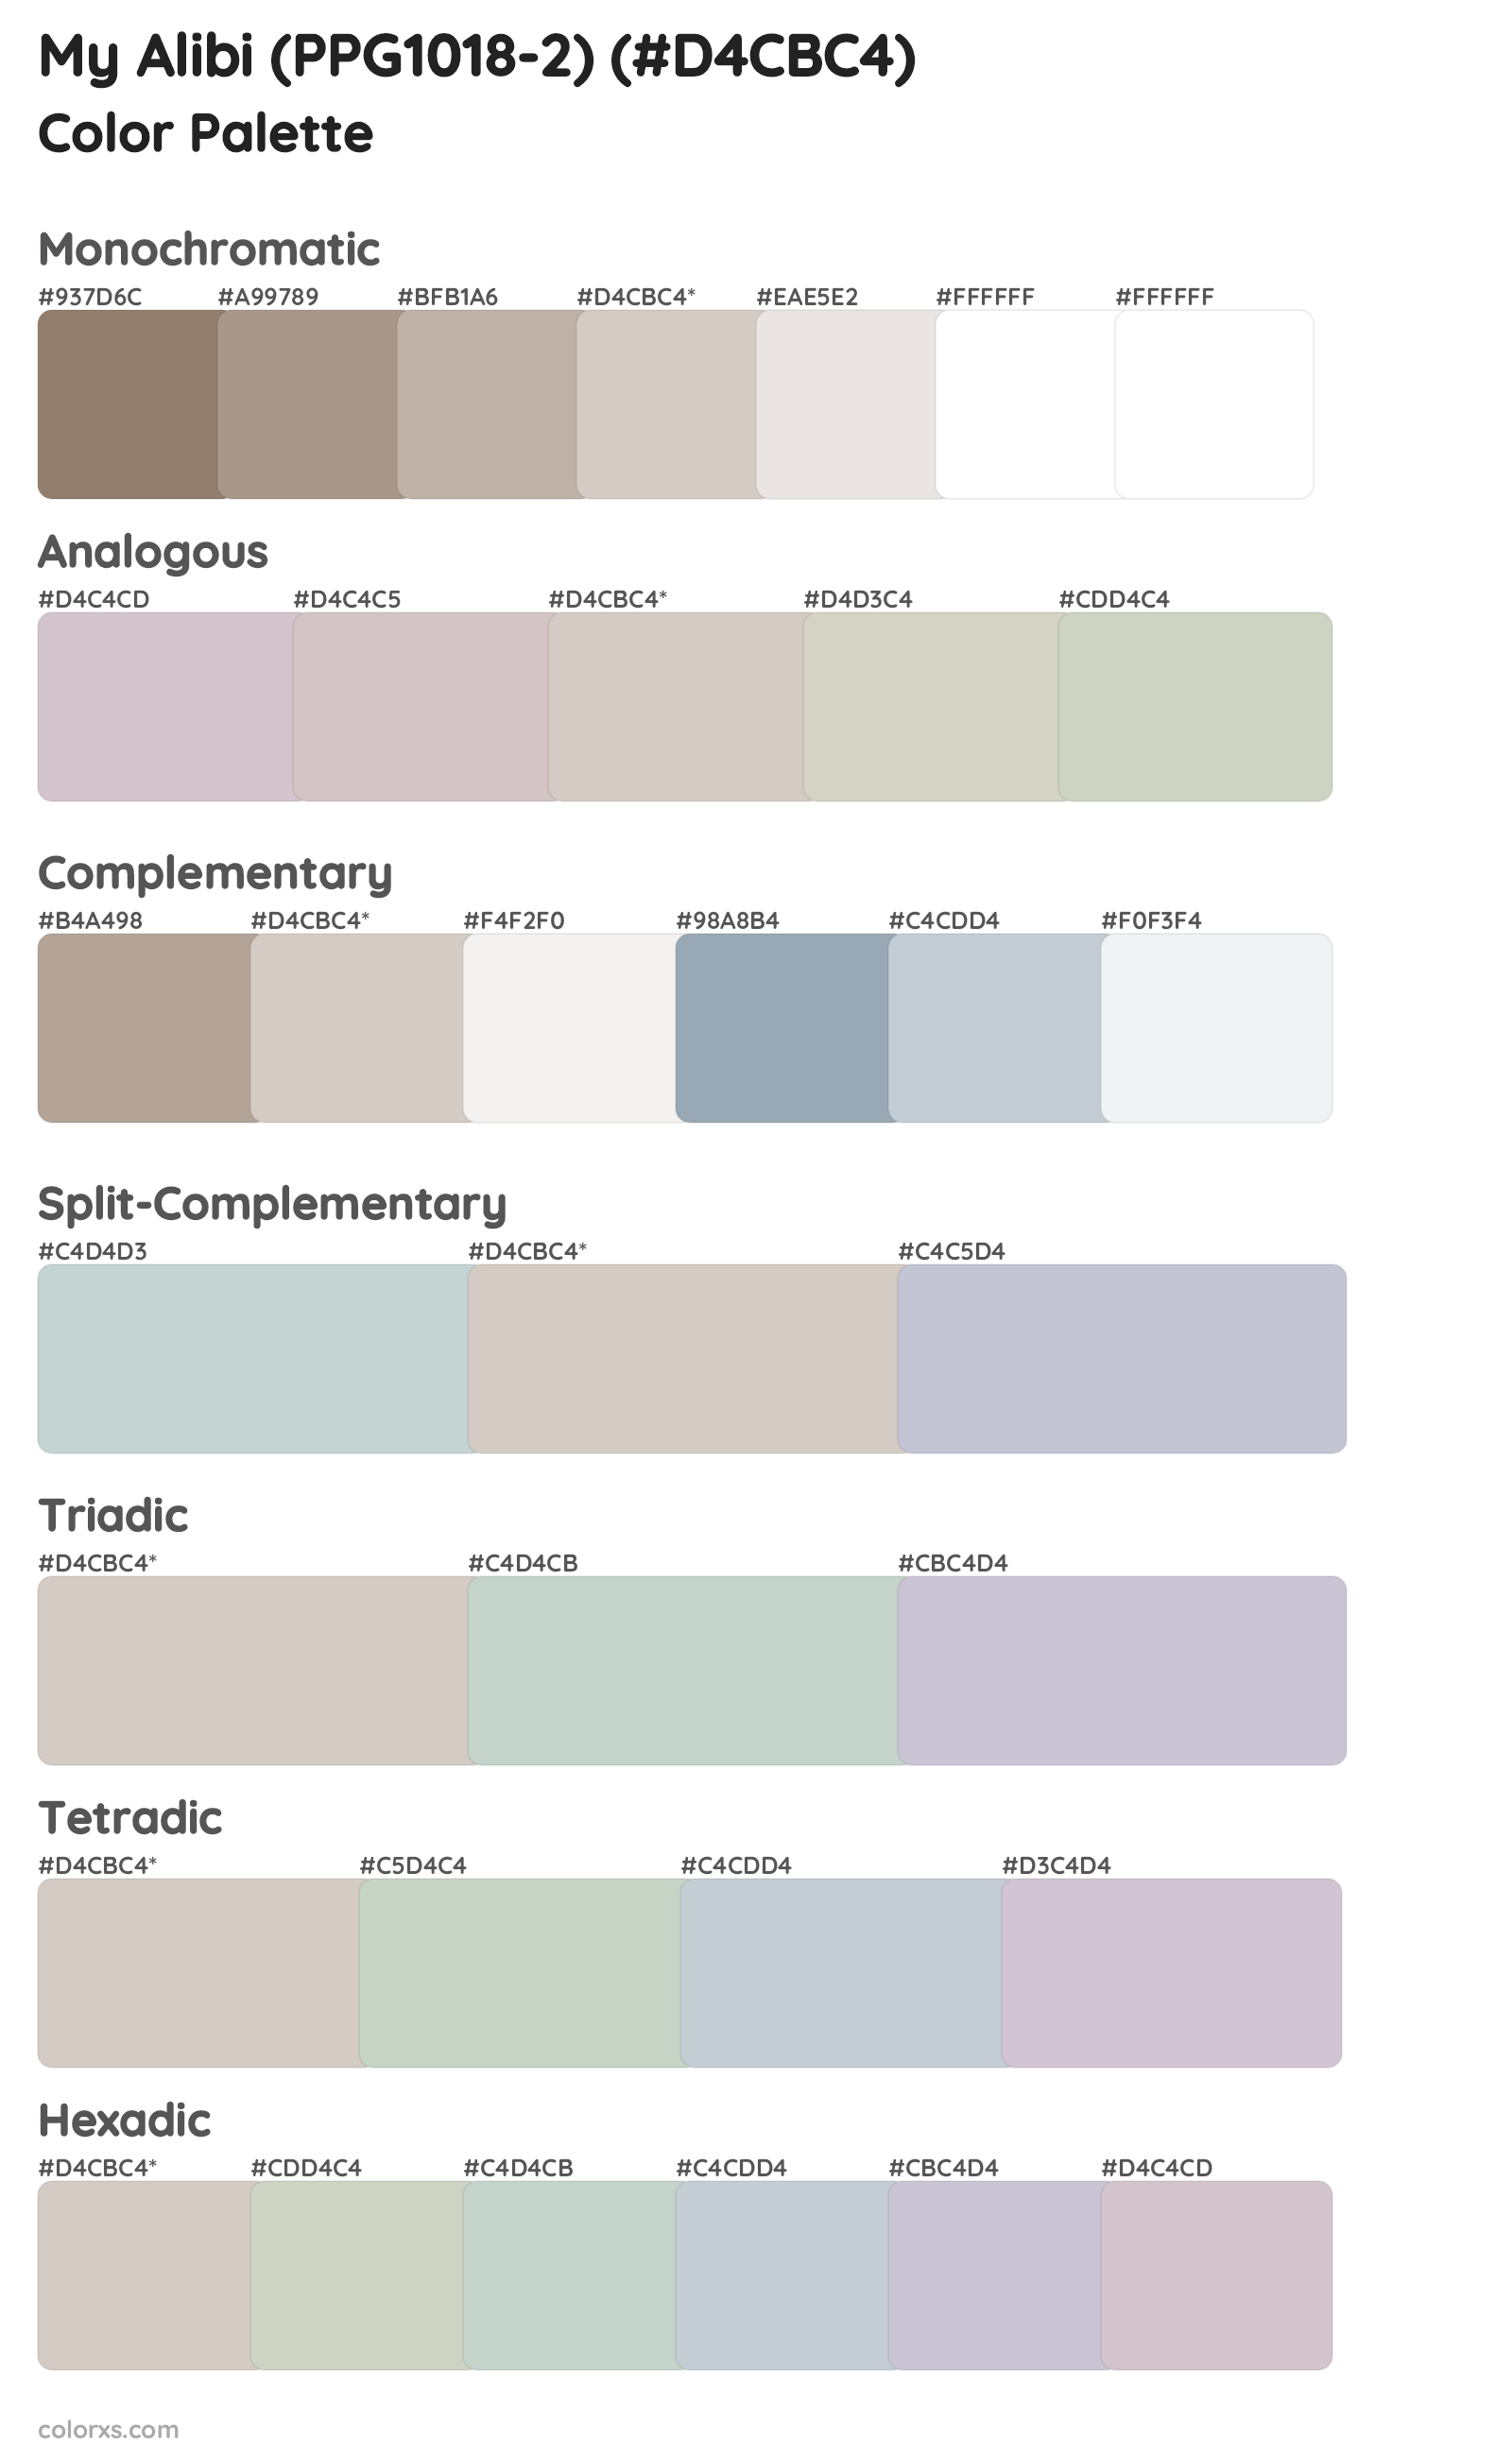 My Alibi (PPG1018-2) Color Scheme Palettes